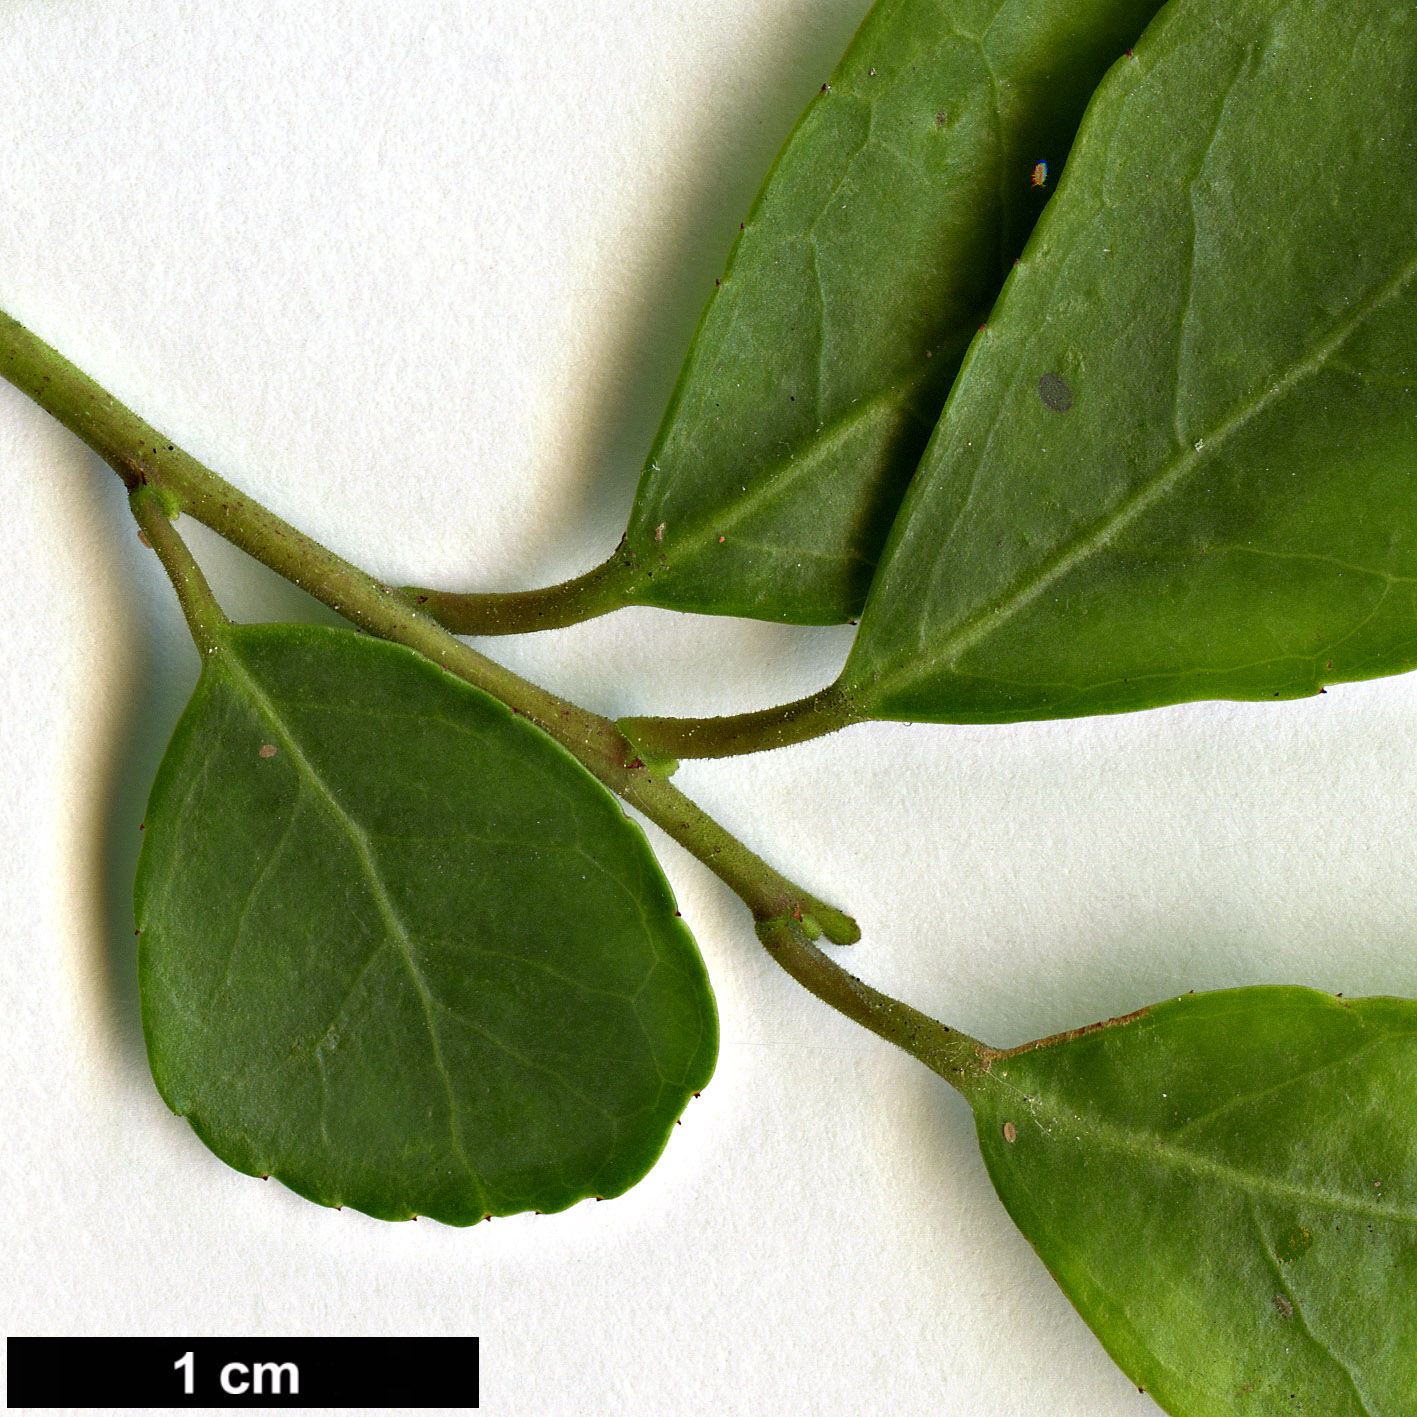 High resolution image: Family: Aquifoliaceae - Genus: Ilex - Taxon: vomitoria